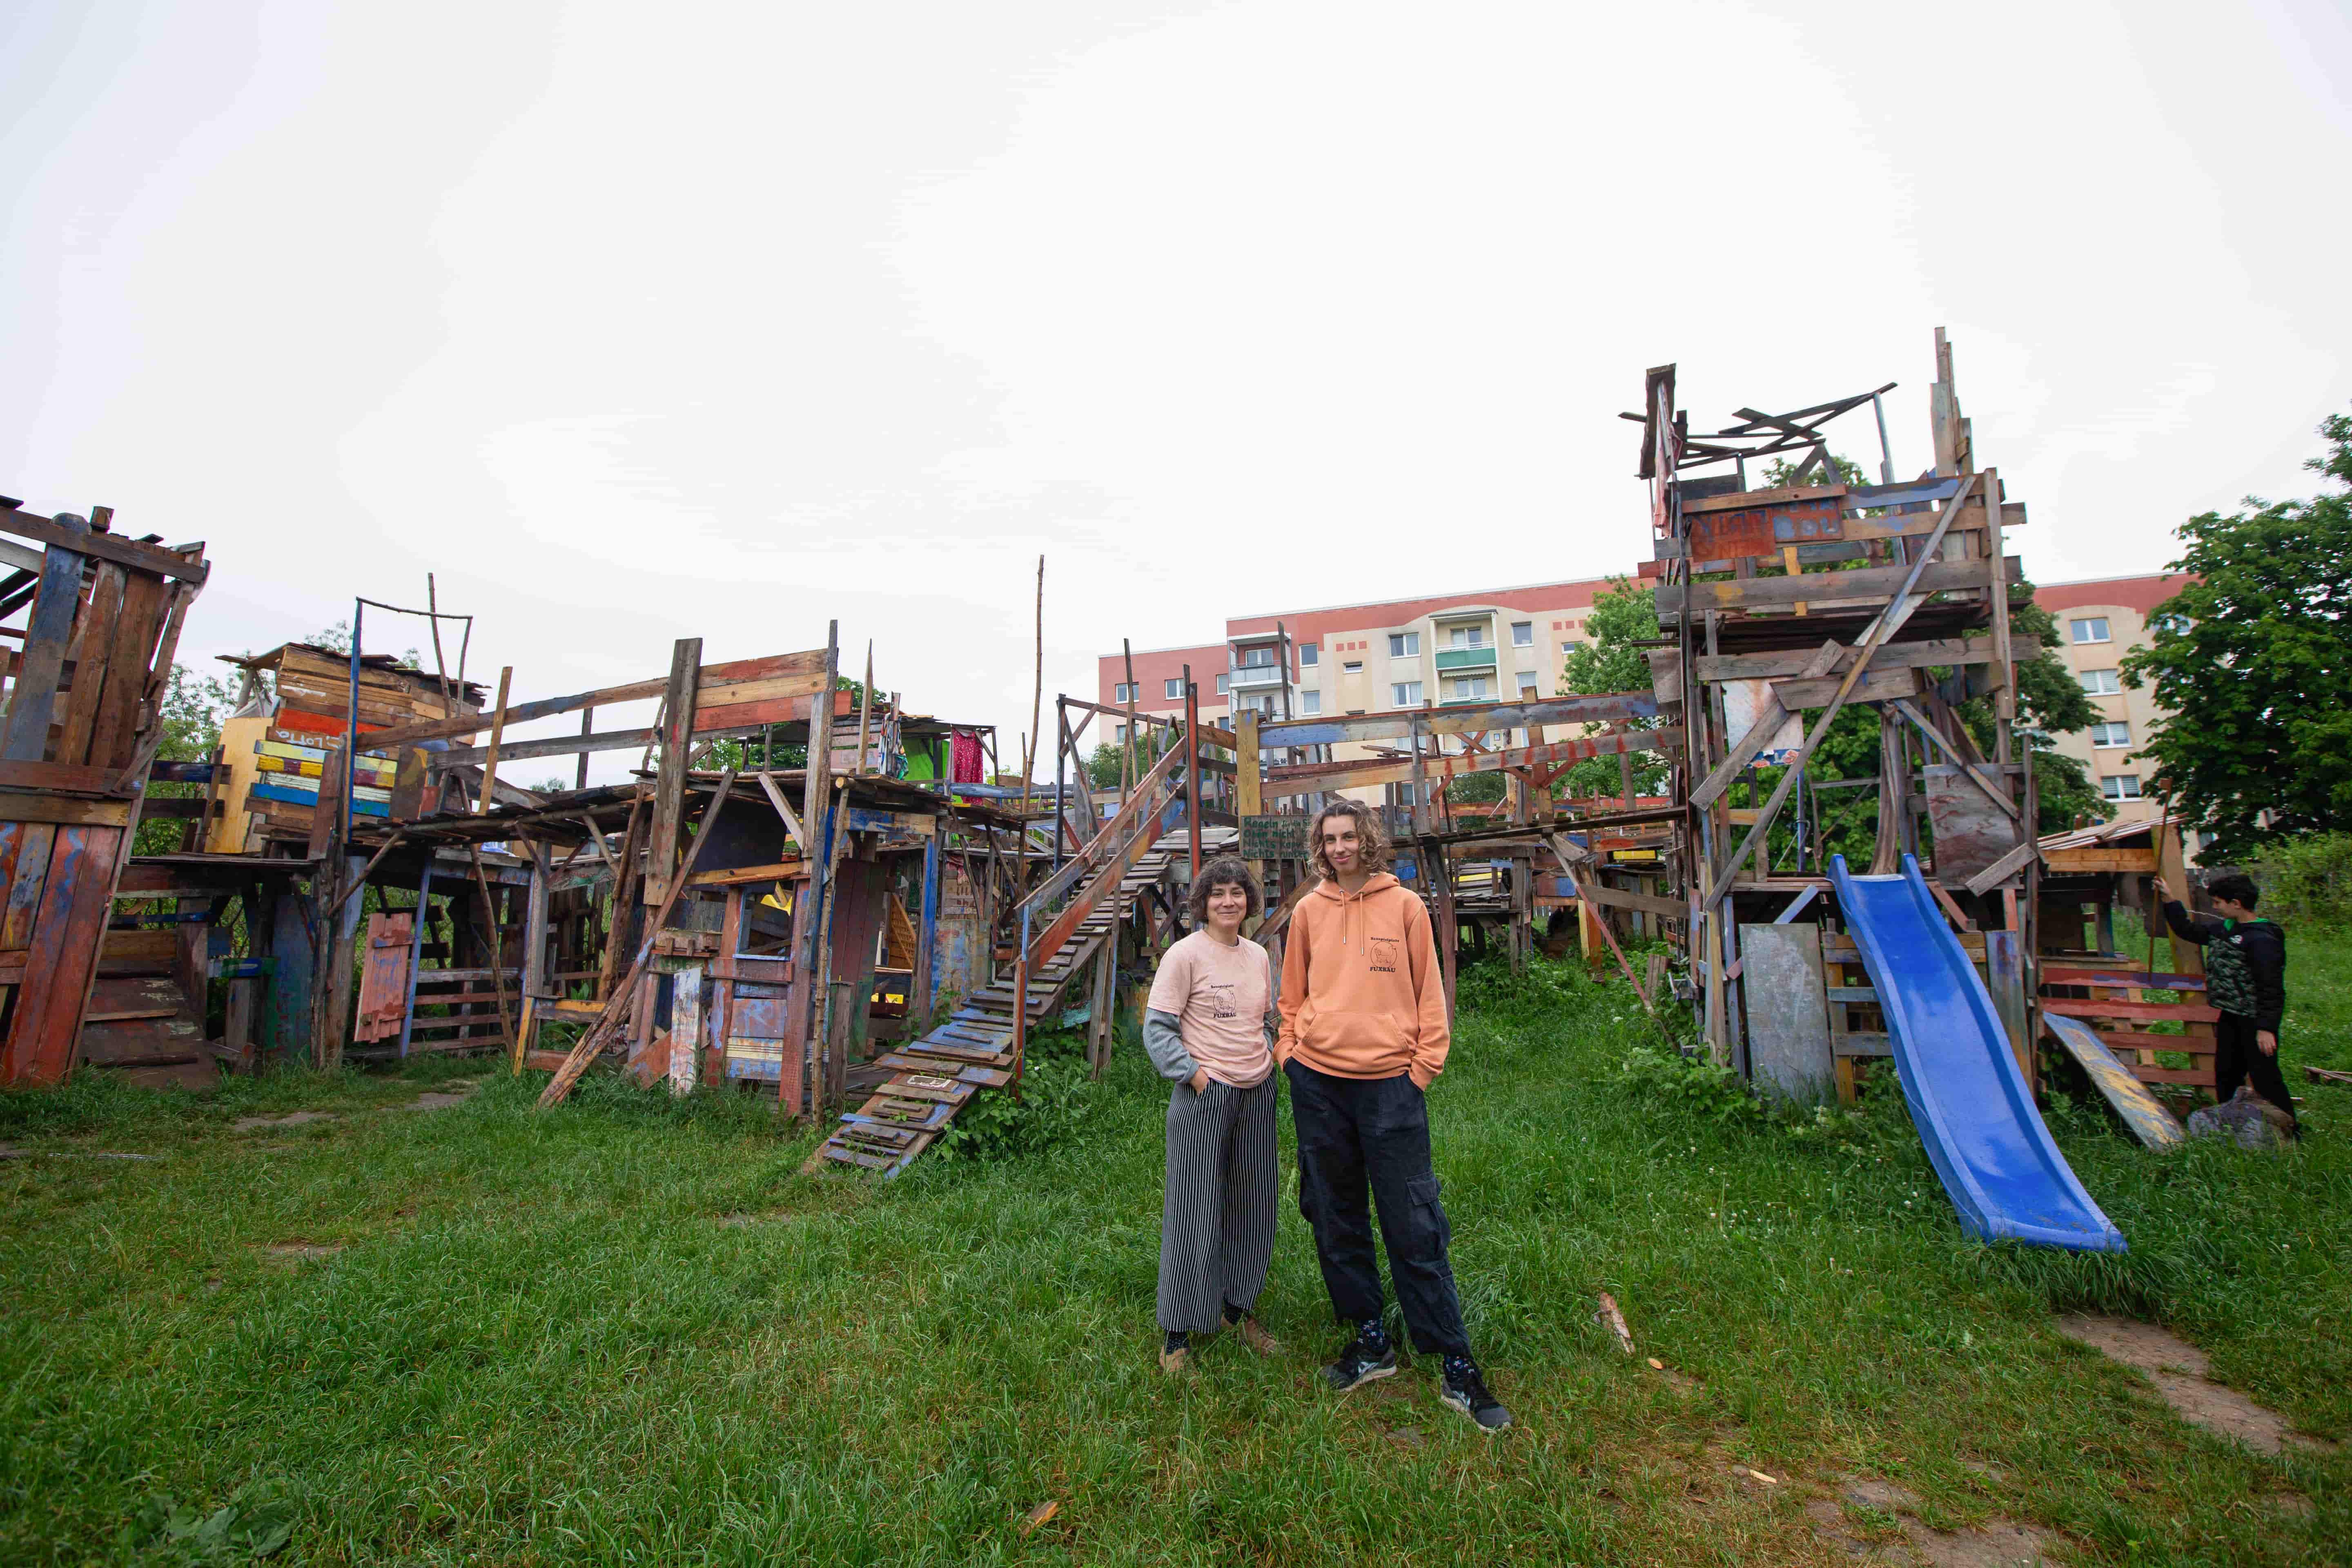   Der Hammer fällt | Ende des Jahres muss der Bauspielplatz in Mockau schließen – eine Ausweichfläche gibt es bisher nicht  